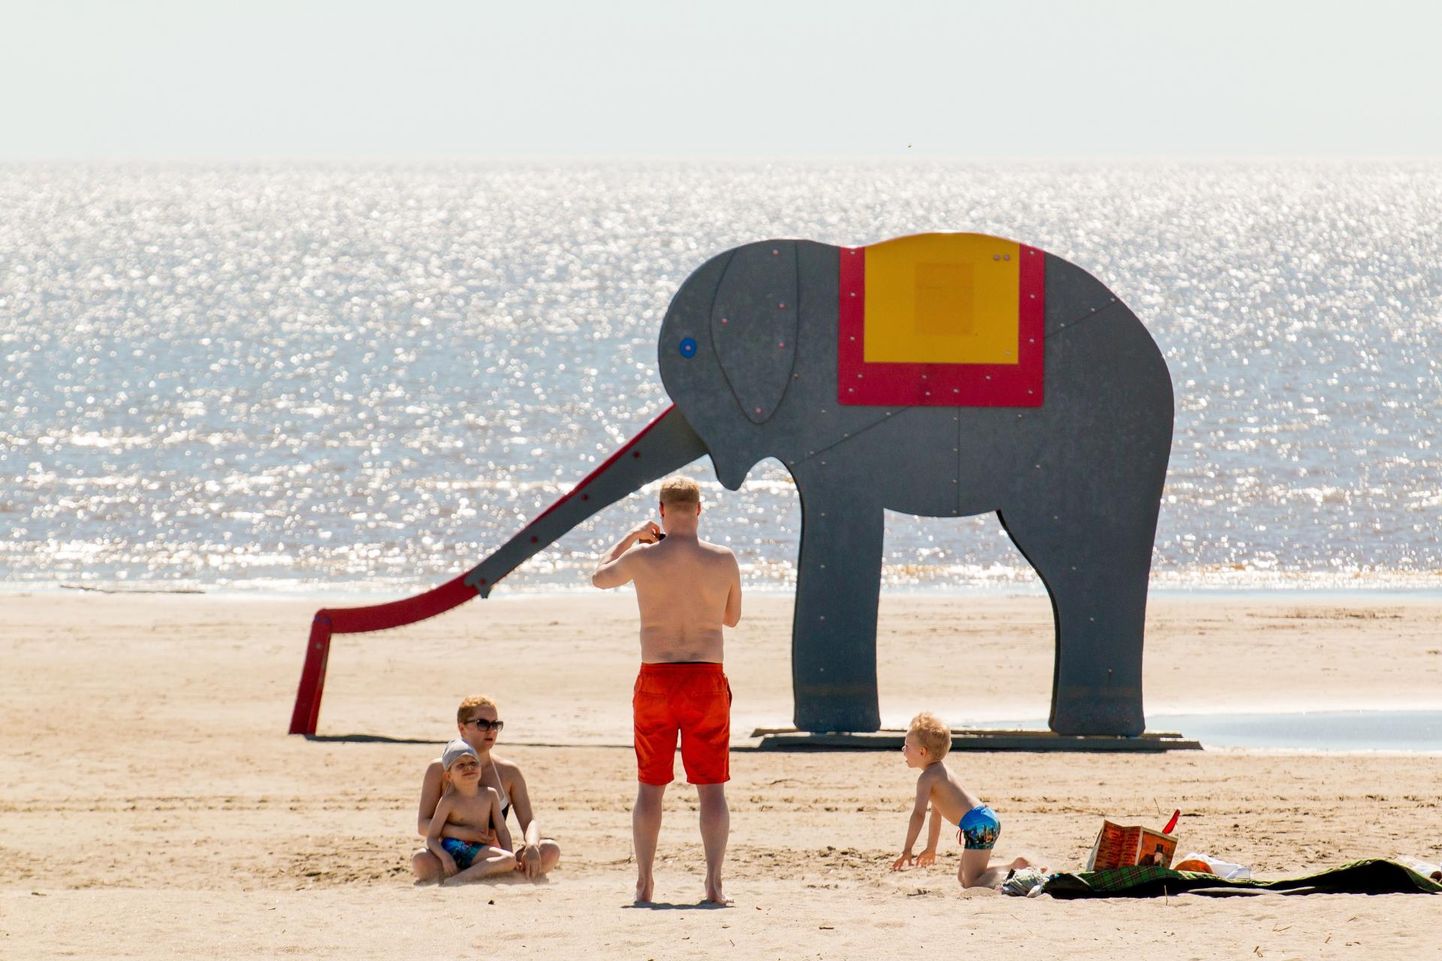 Пярнуский песчаный пляж и теплая погода привлекают туристов со всей Эстонии.